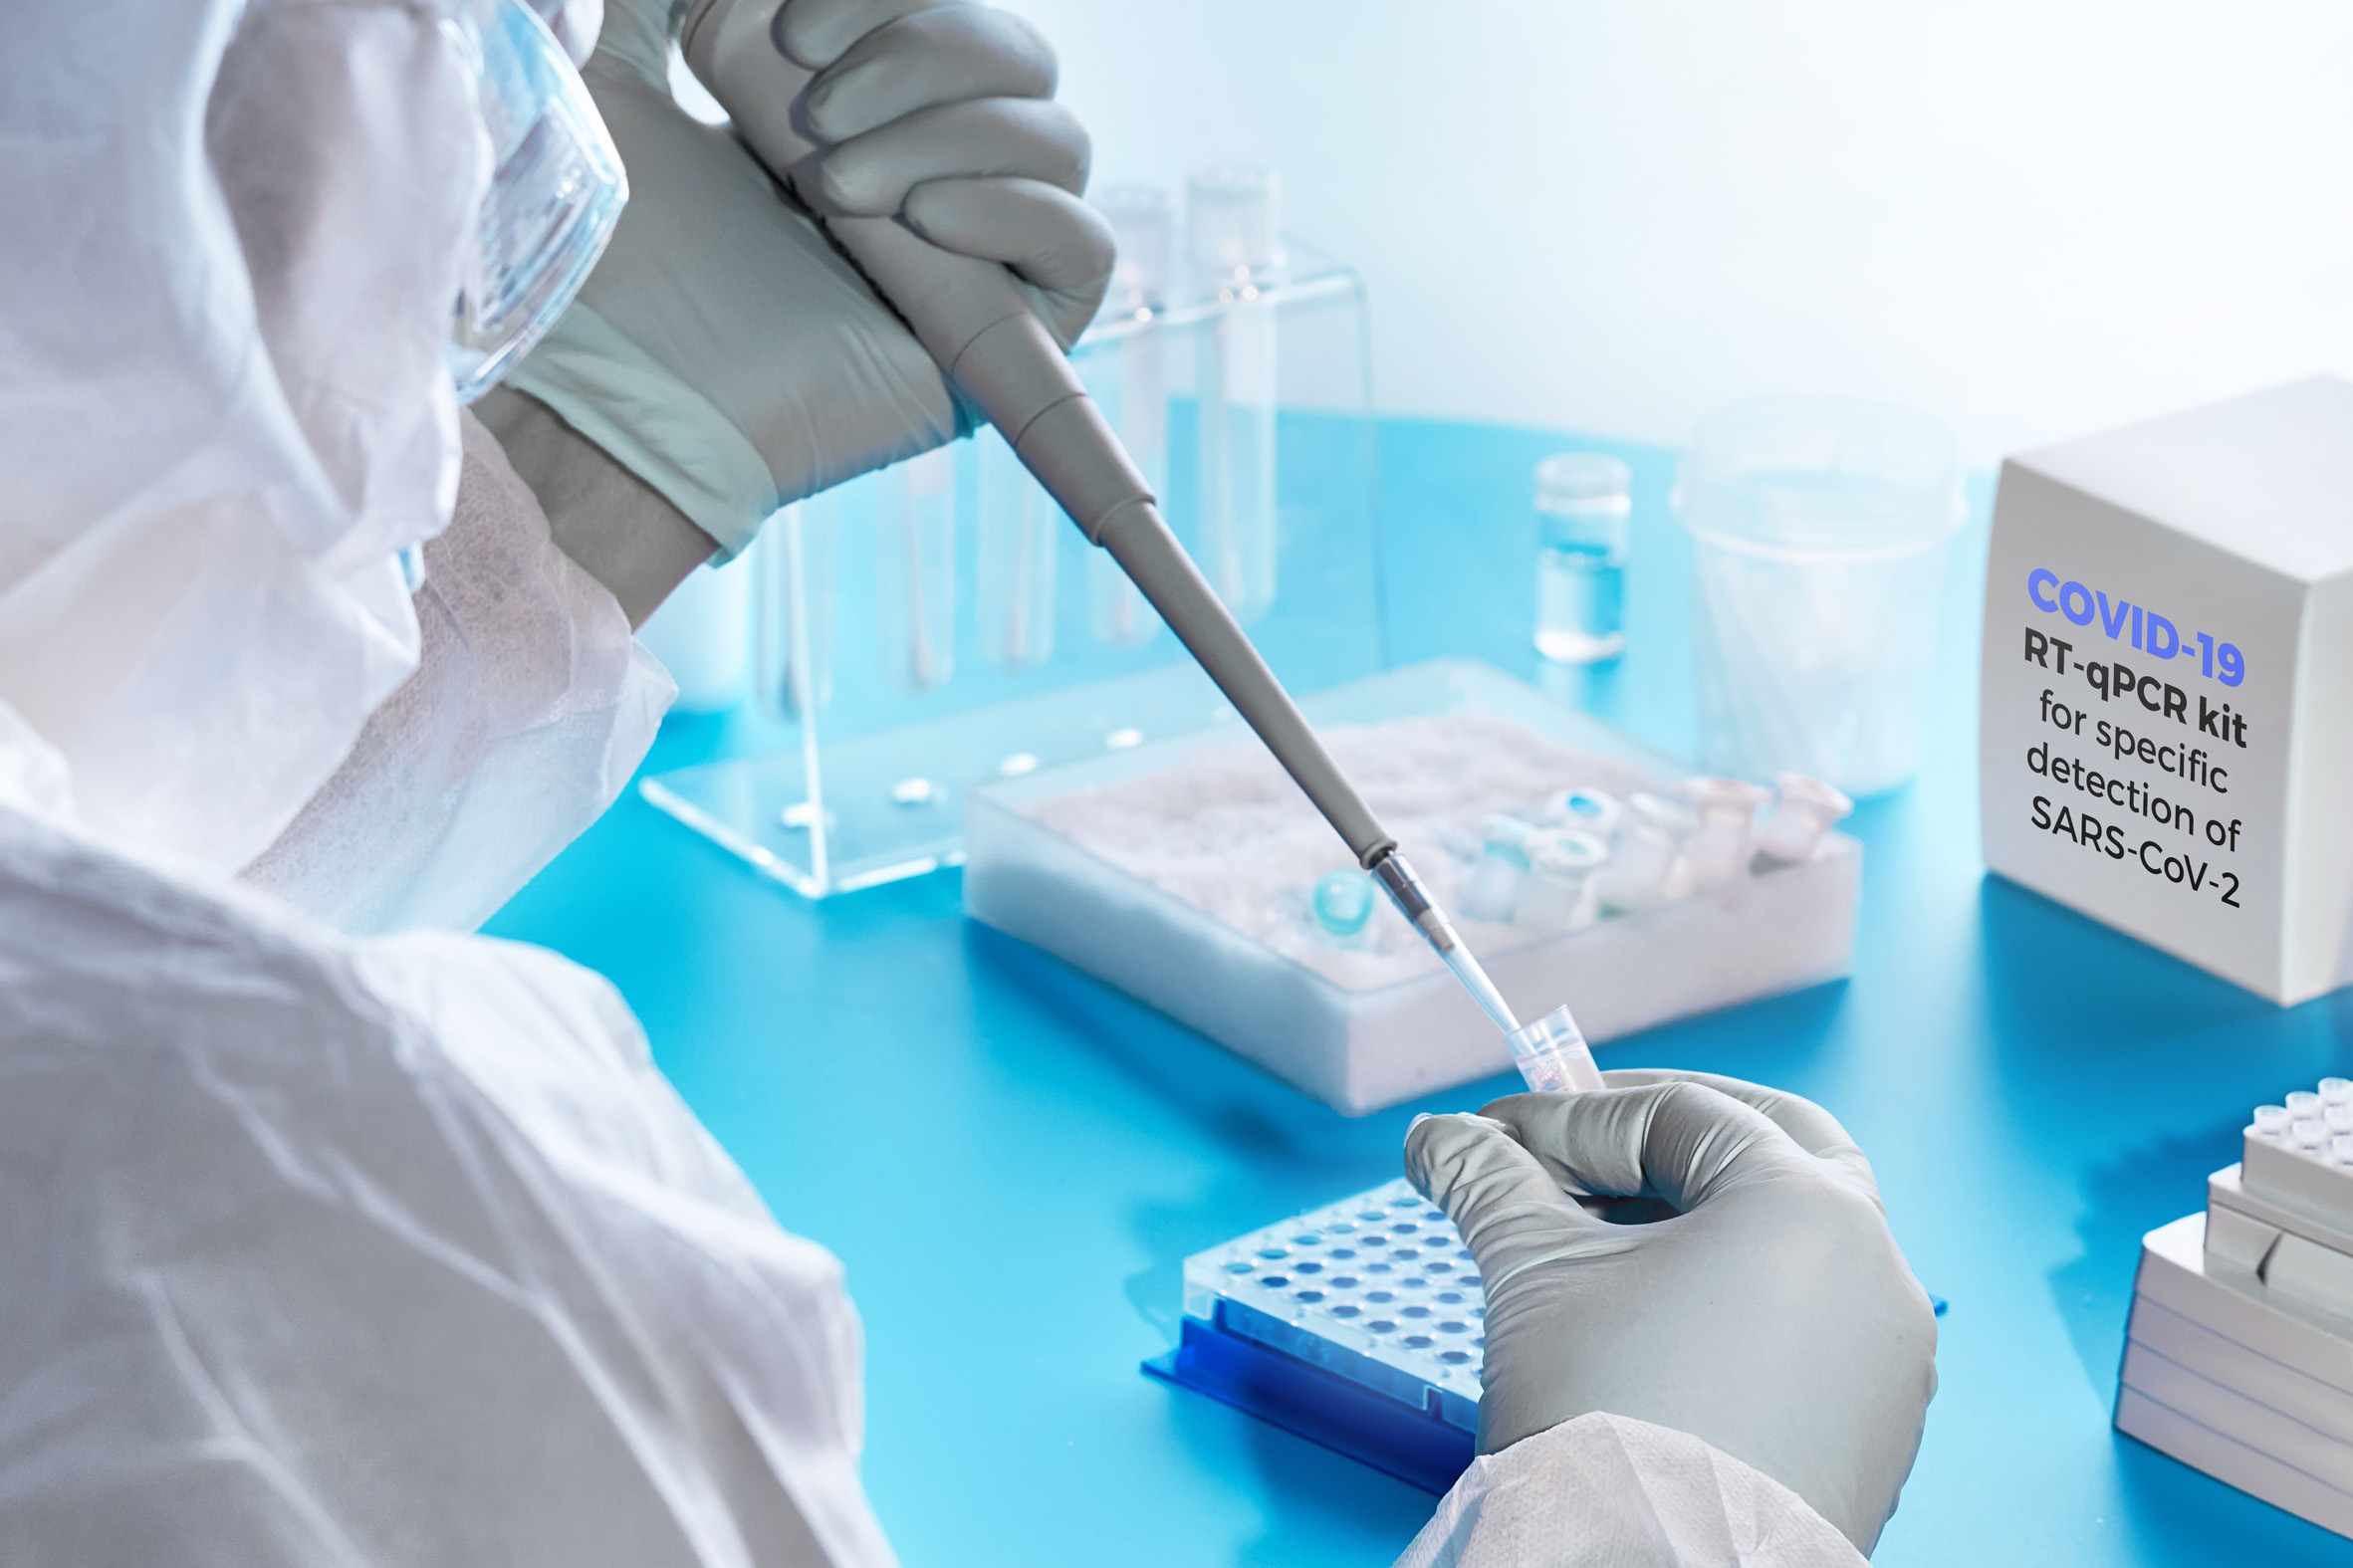 ამბულატორიული დაწესებულებები, სადაც გამოცდებში მონაწილეებს PCR ტესტირების ჩატარება უფასოდ შეუძლიათ